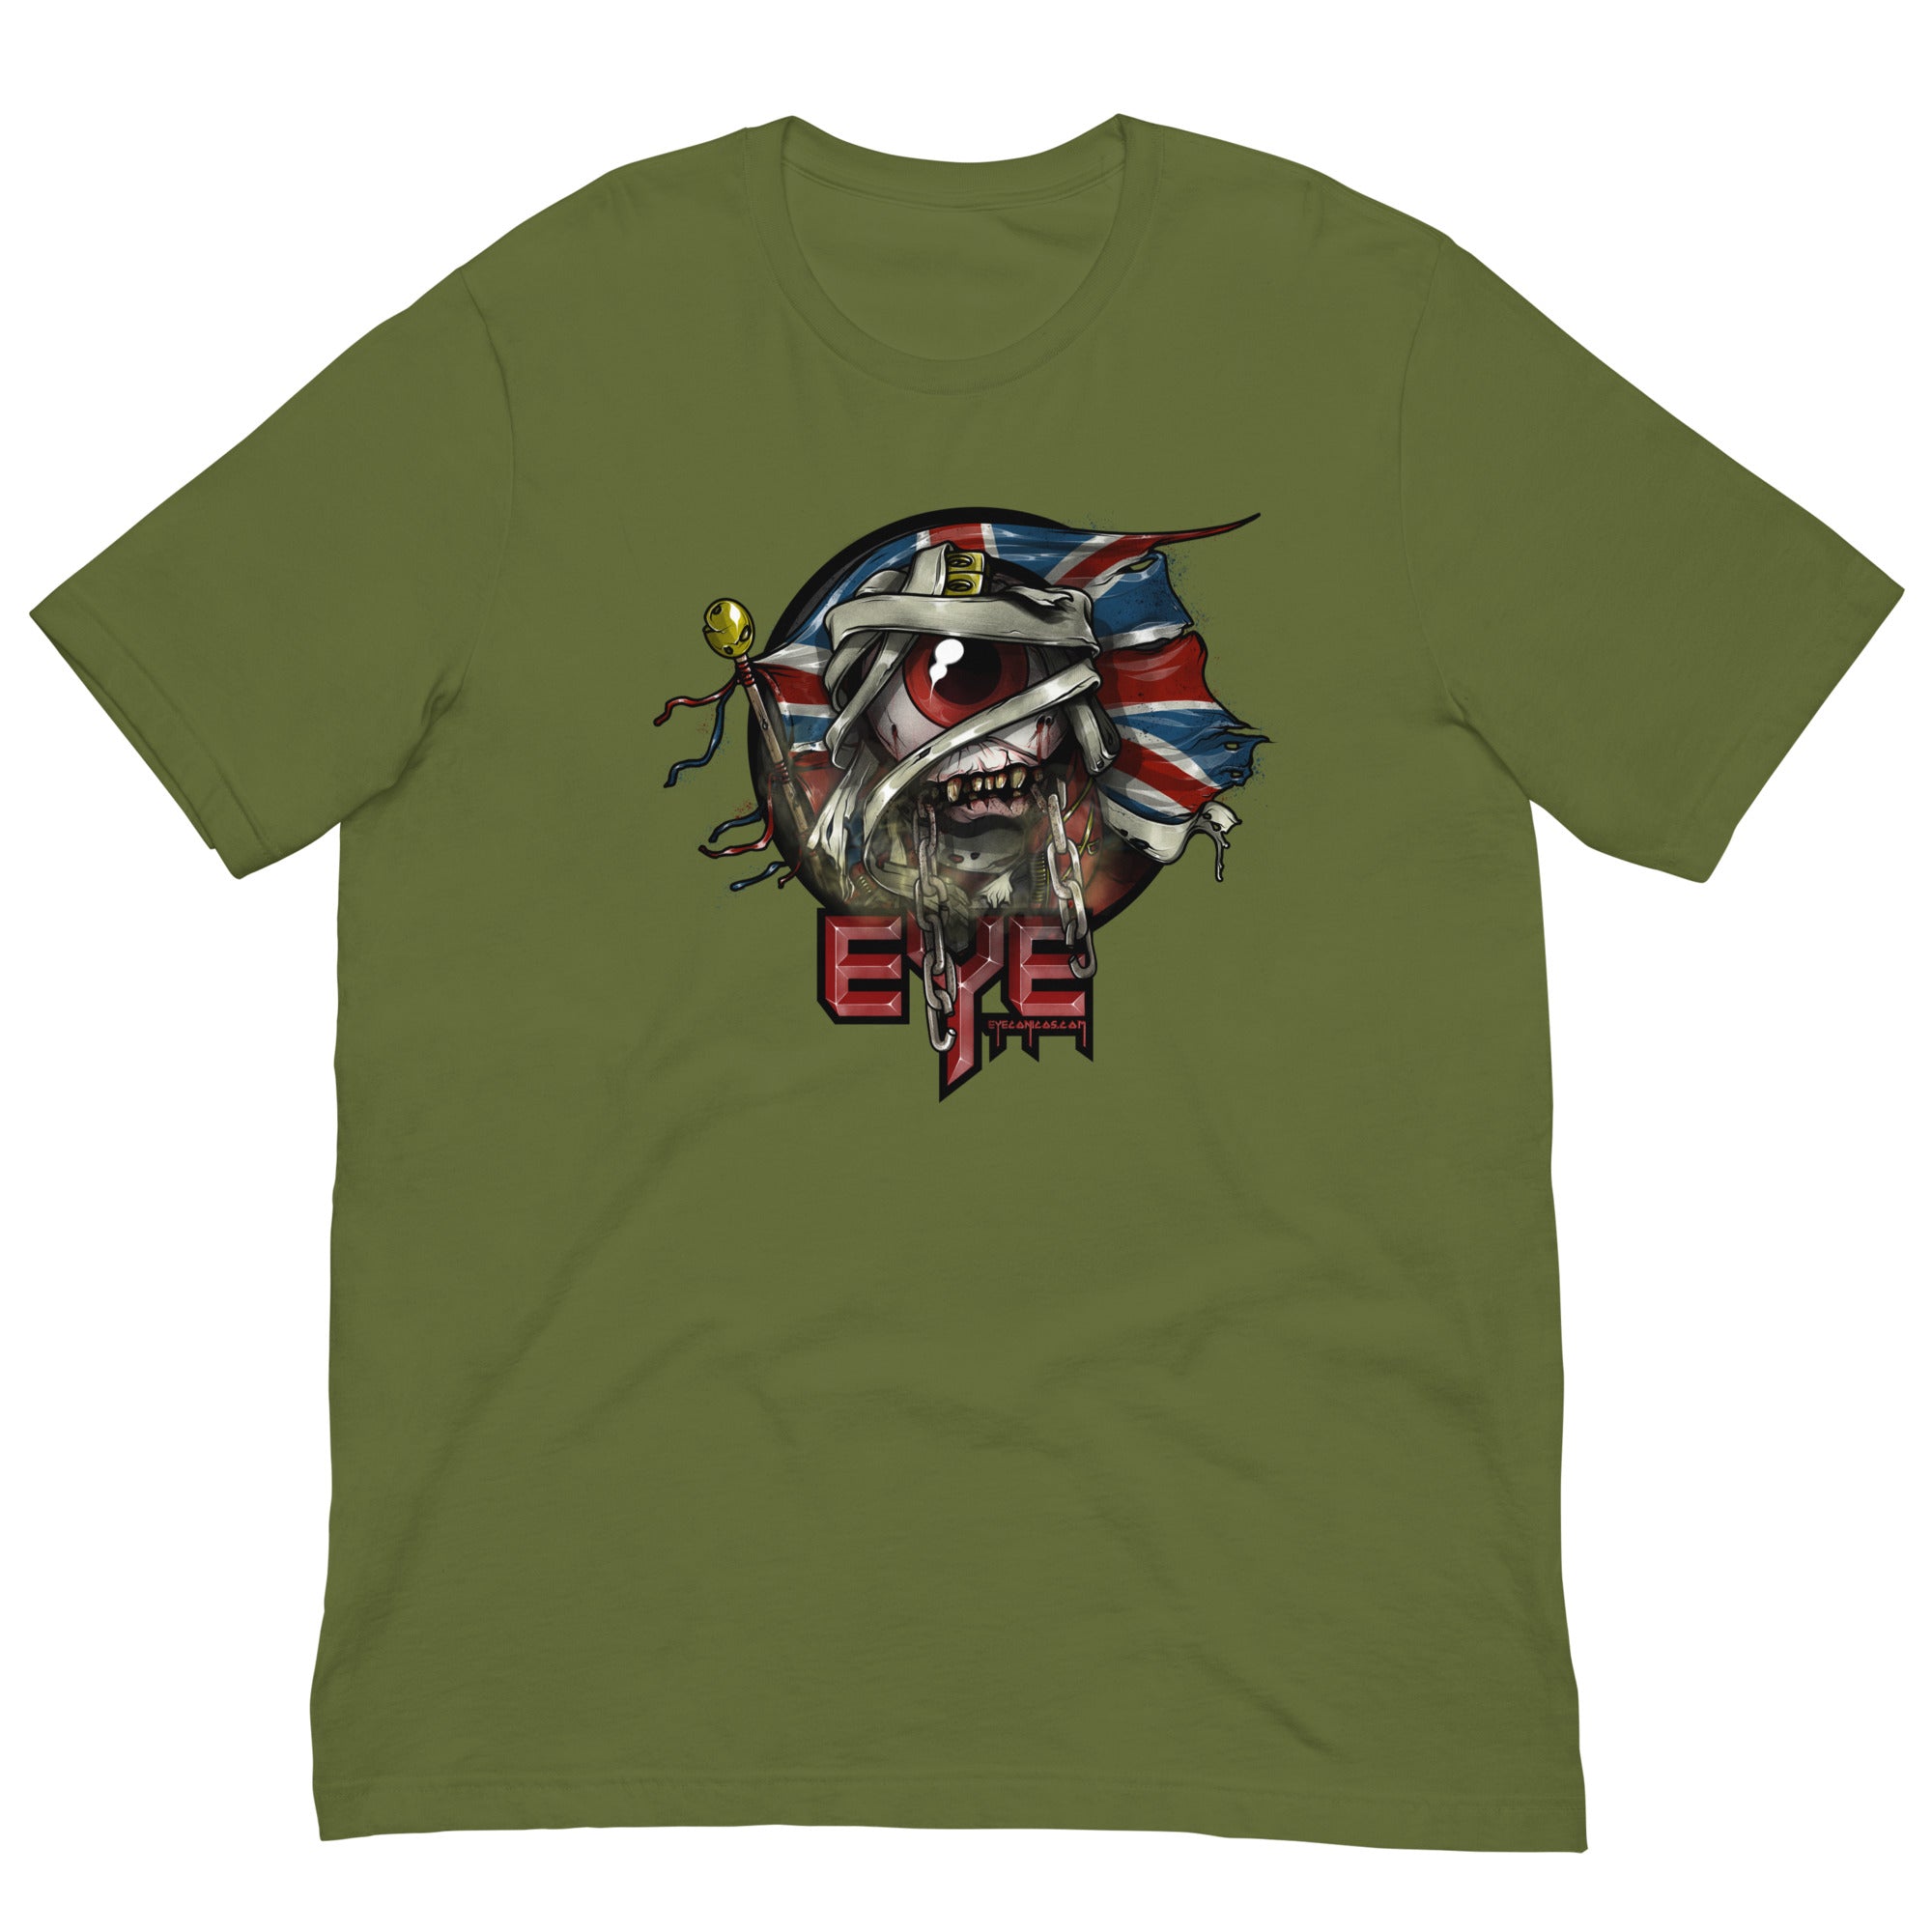 Eyeron Maiden T-Shirt